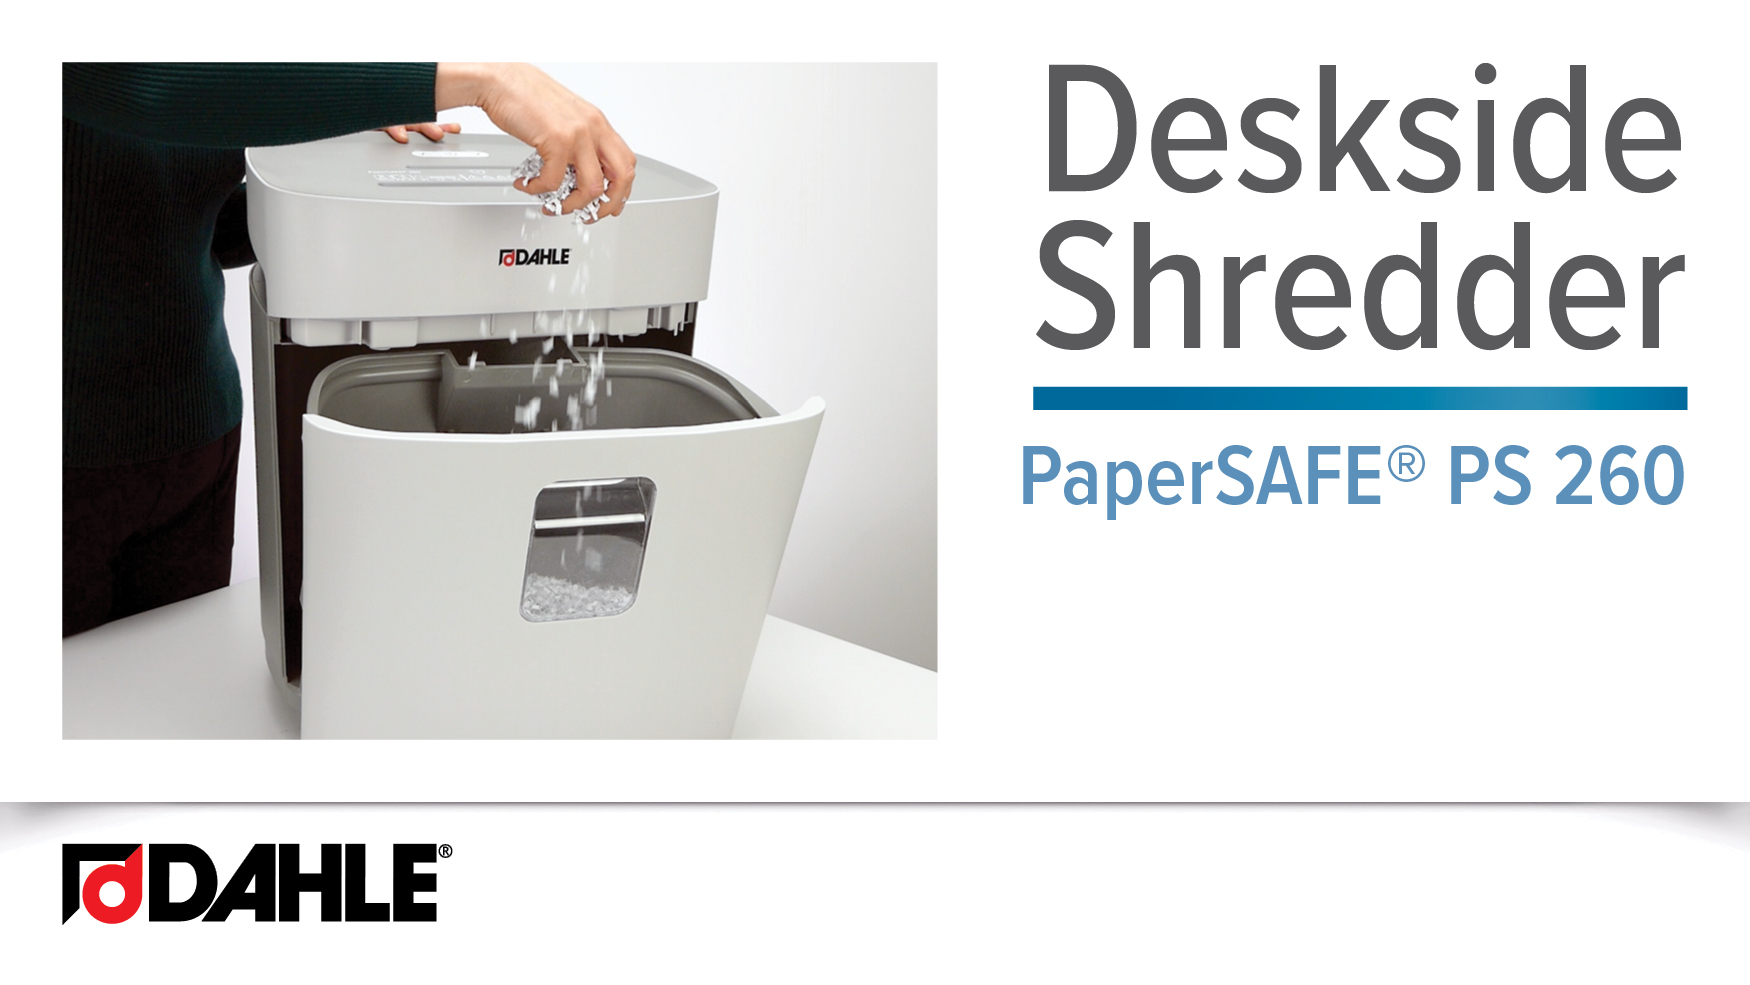 PaperSAFE® PS 260 Desk Side Shredder Video